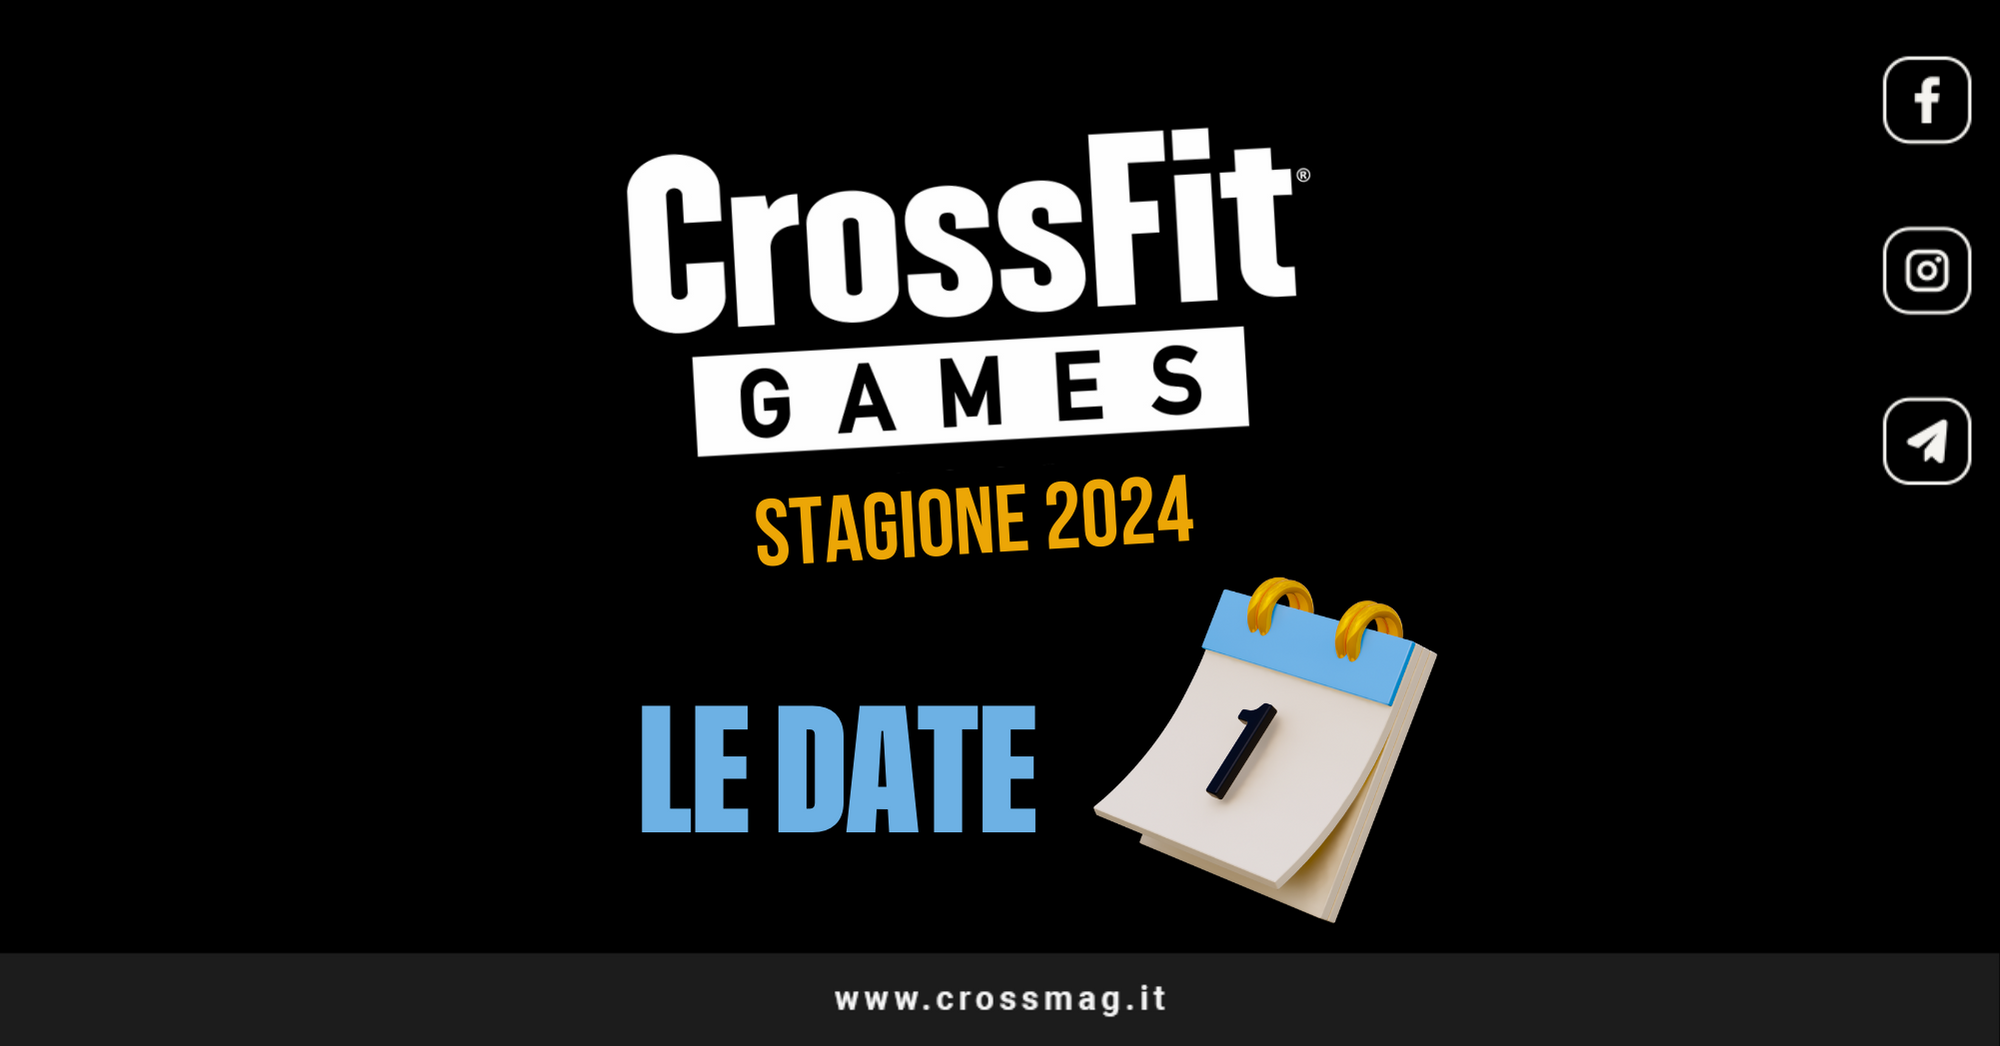 TCB 2024: Novo Formato, Novas Regras - HugoCross - Tudo Sobre CrossFit:  Games, Open, Acessórios e Nutrição